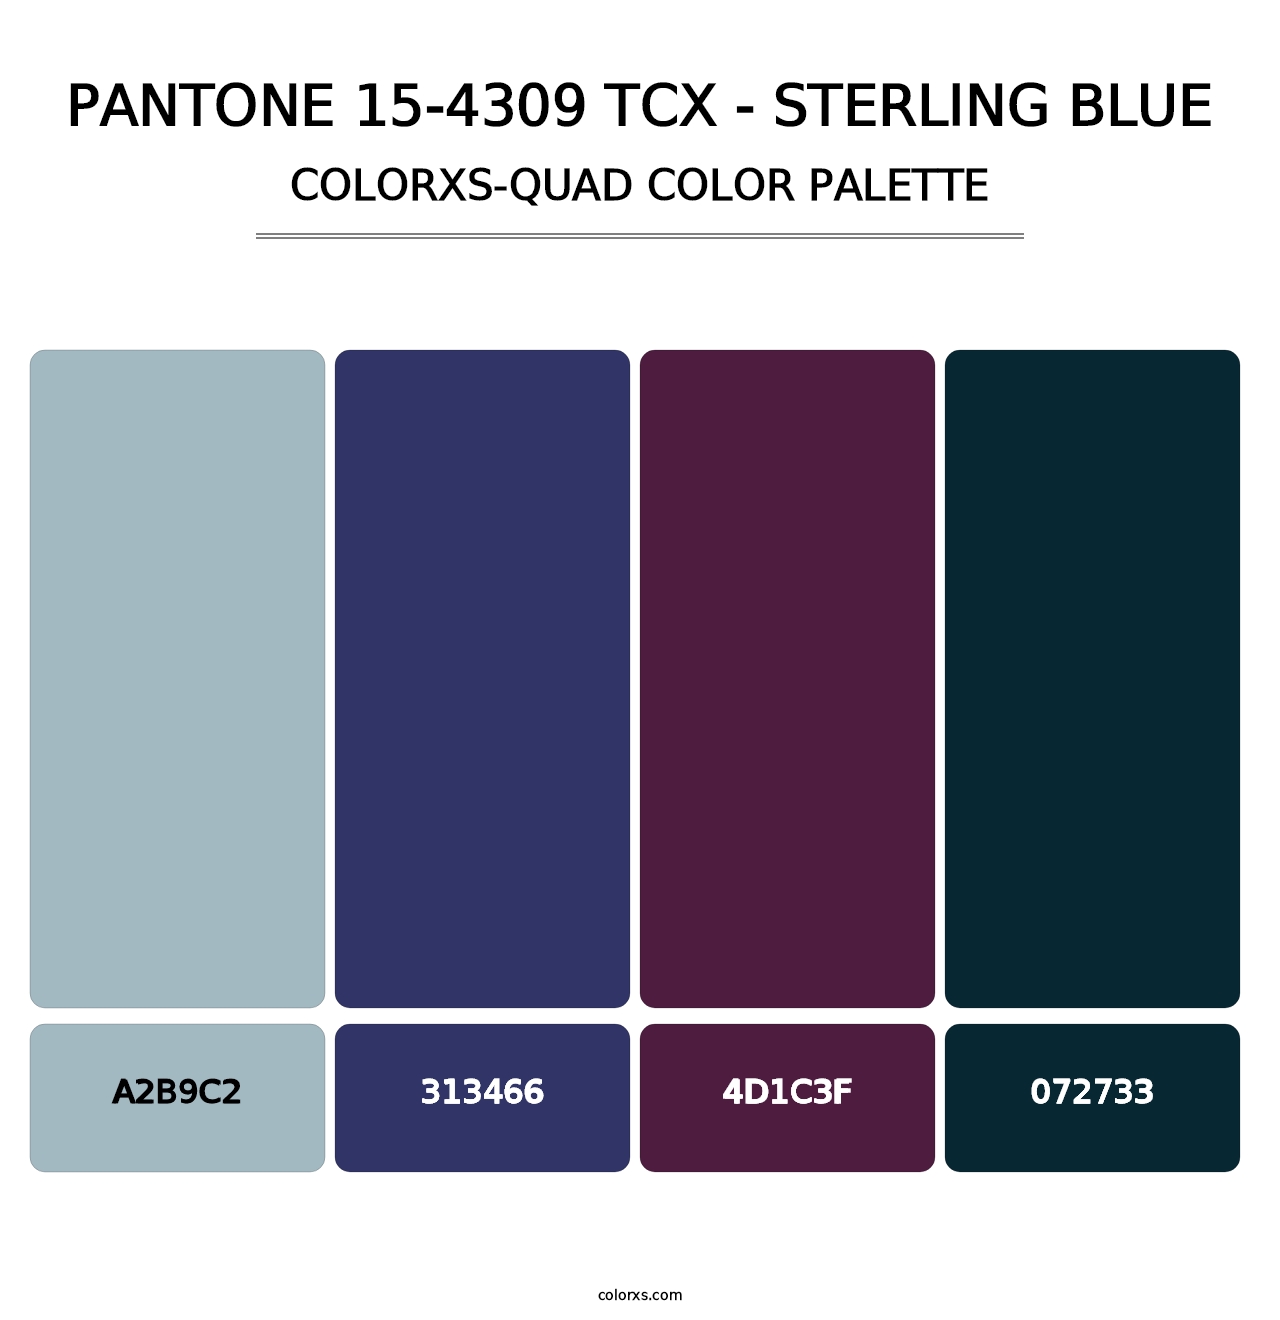 PANTONE 15-4309 TCX - Sterling Blue - Colorxs Quad Palette